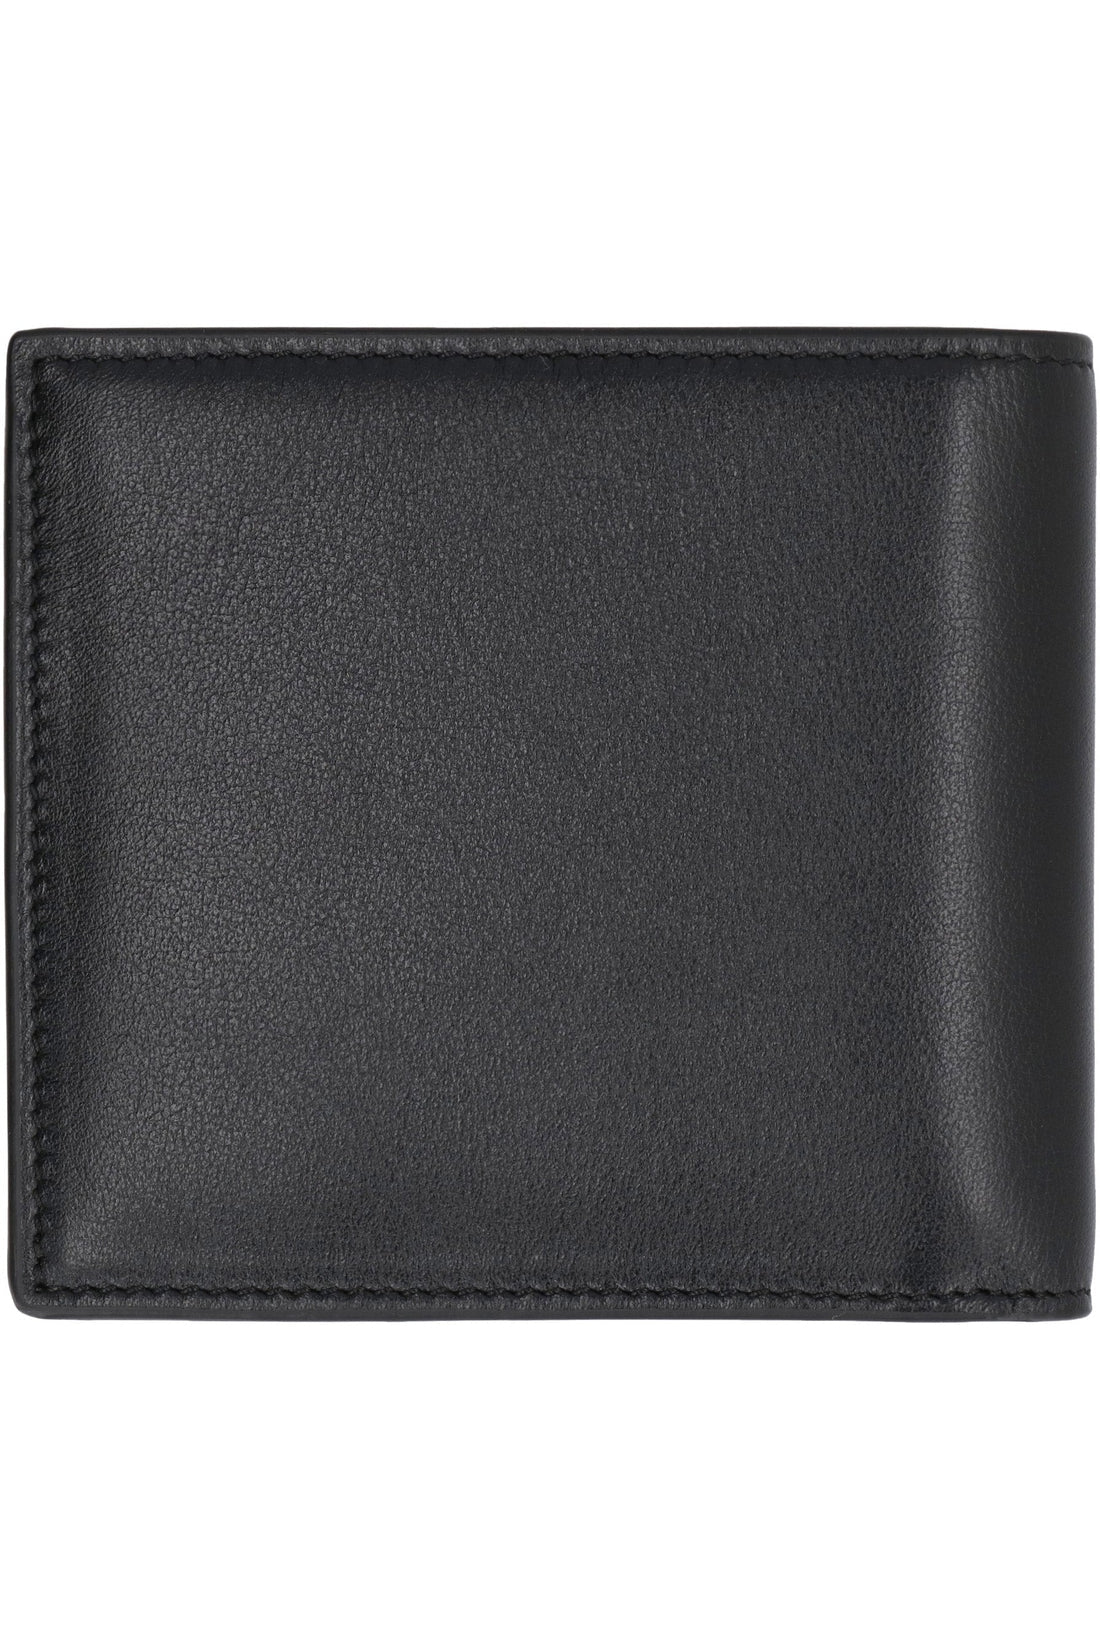 Valentino-OUTLET-SALE-Valentino Garavani - Leather wallet-ARCHIVIST